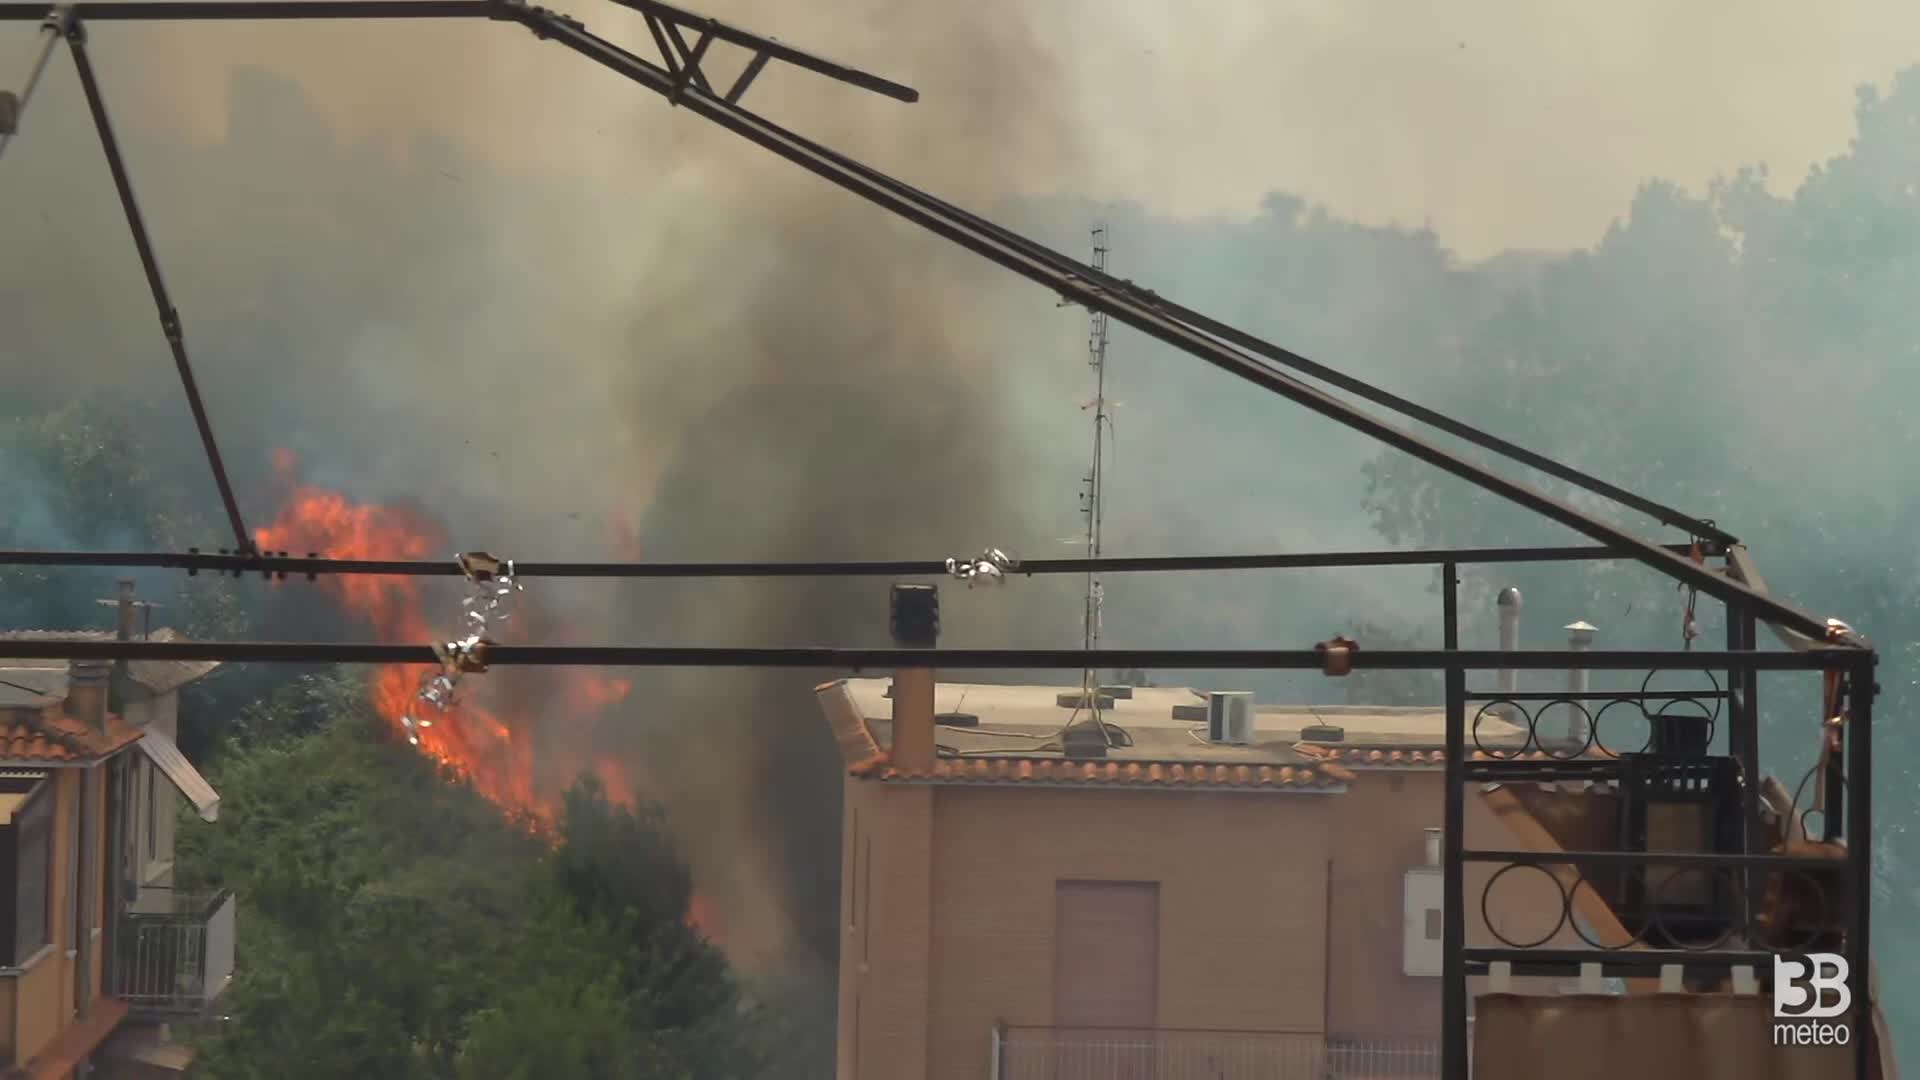 Roma, incendio a ridosso case: abitanti evacuati, fiamme alte